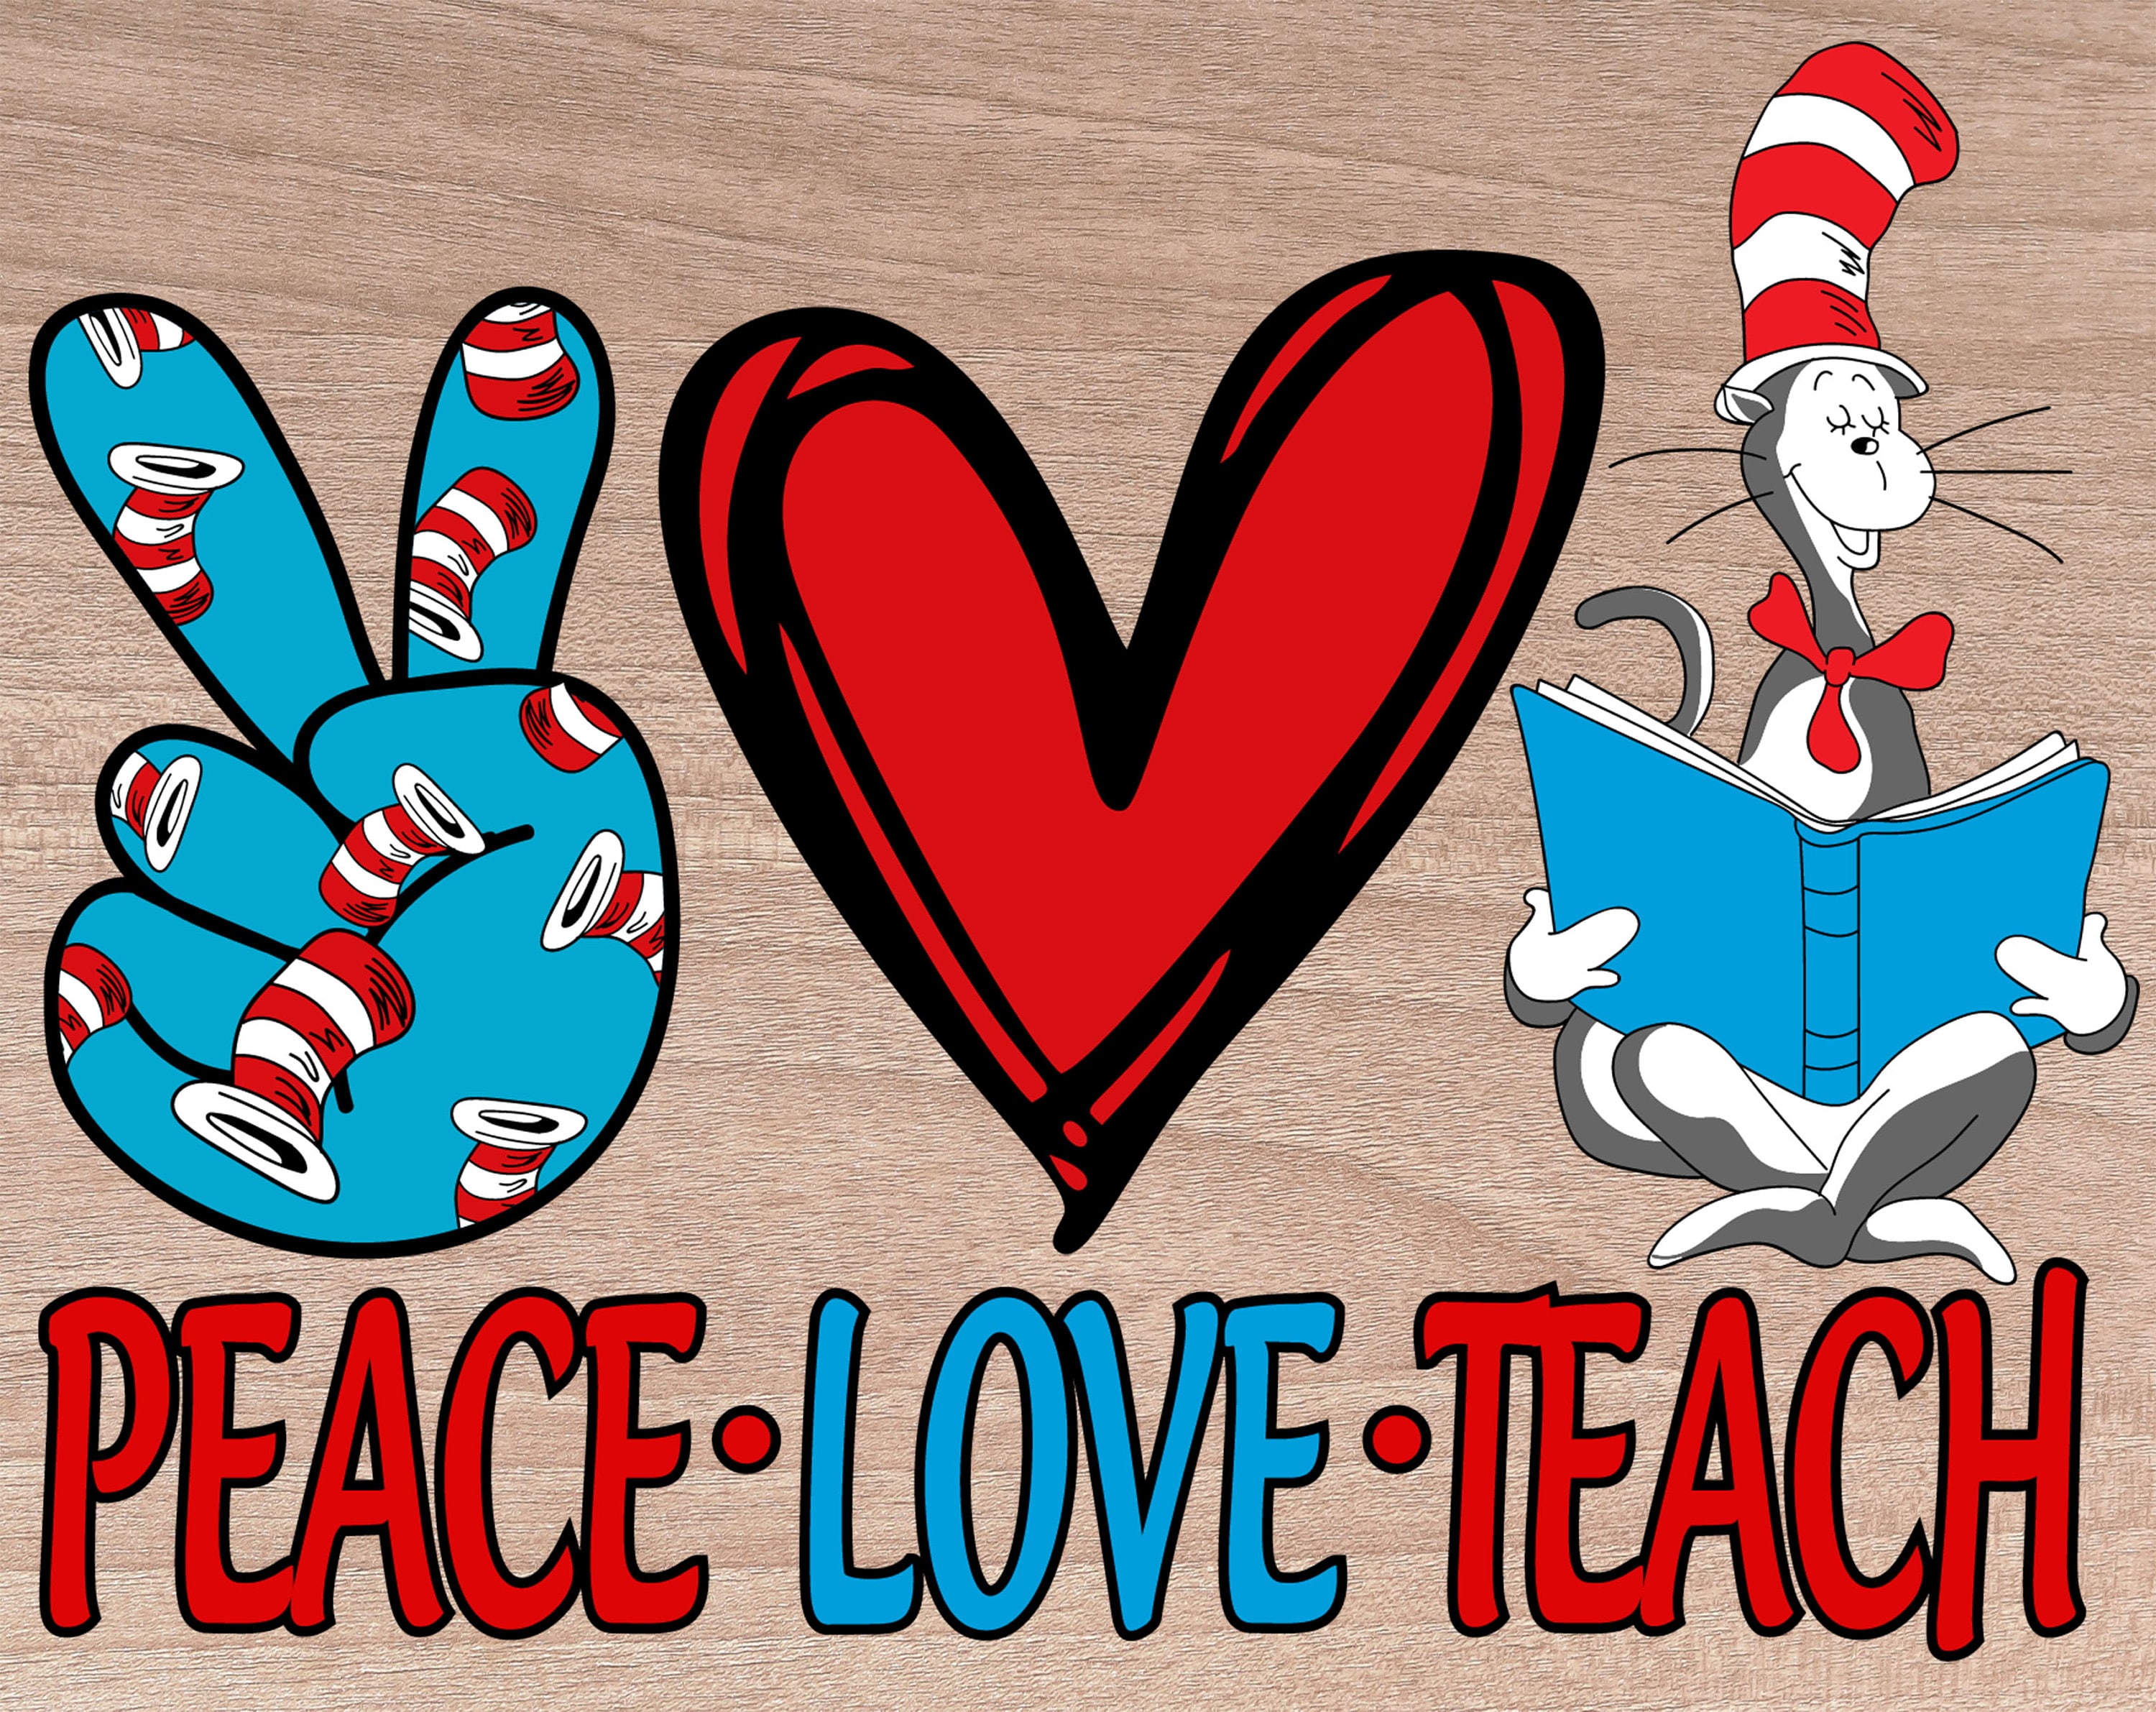 Download Peace Love Teach svg Dr Seuss svgpng Dr Seuss clipart Cat ...